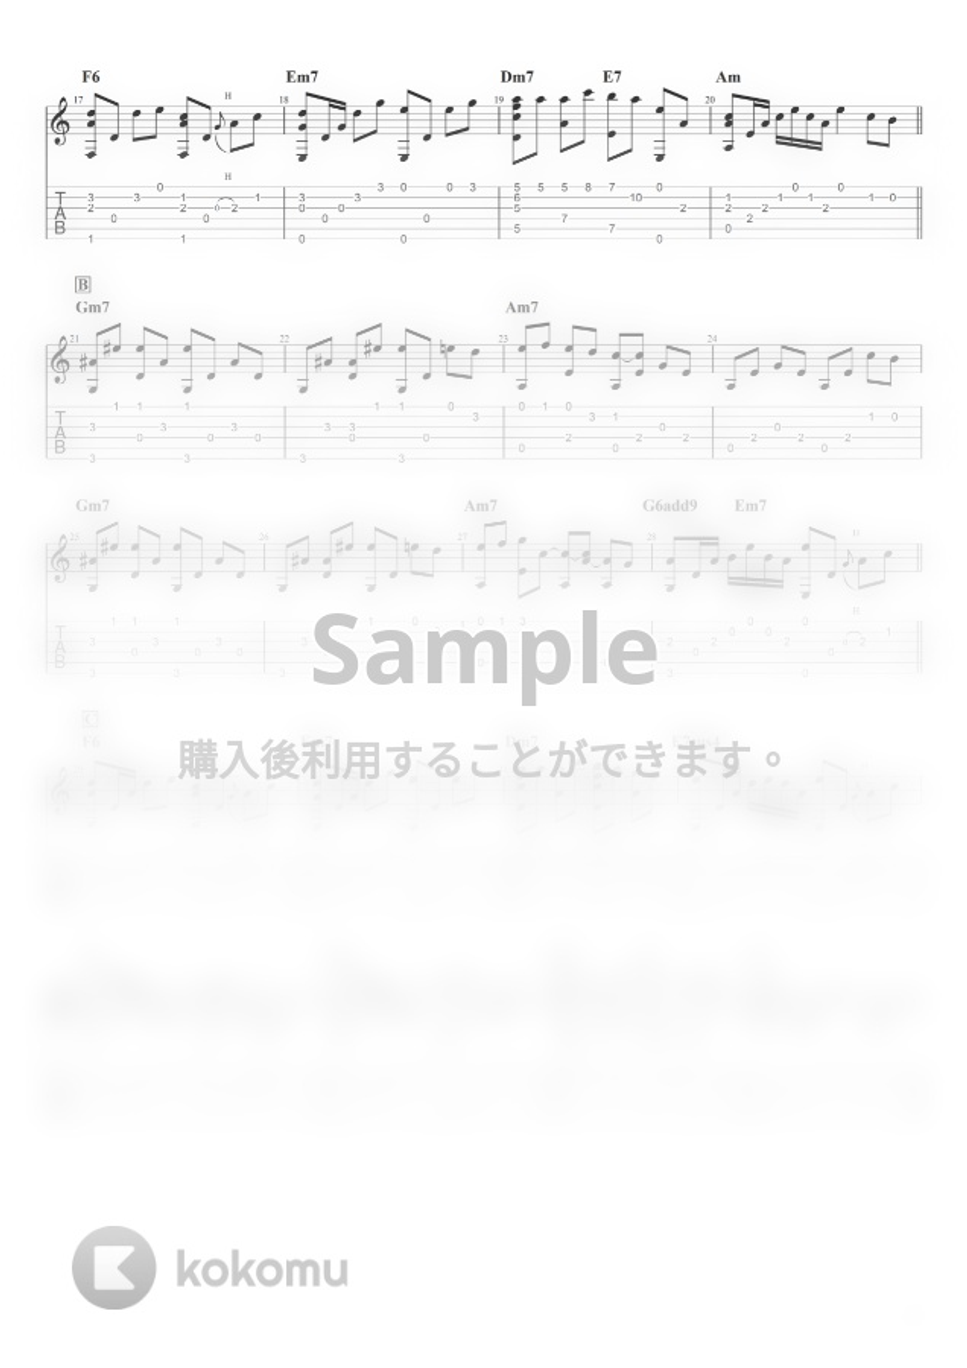 久石譲 - 風のとおり道 (ソロギター) by Shigeo Furukawa